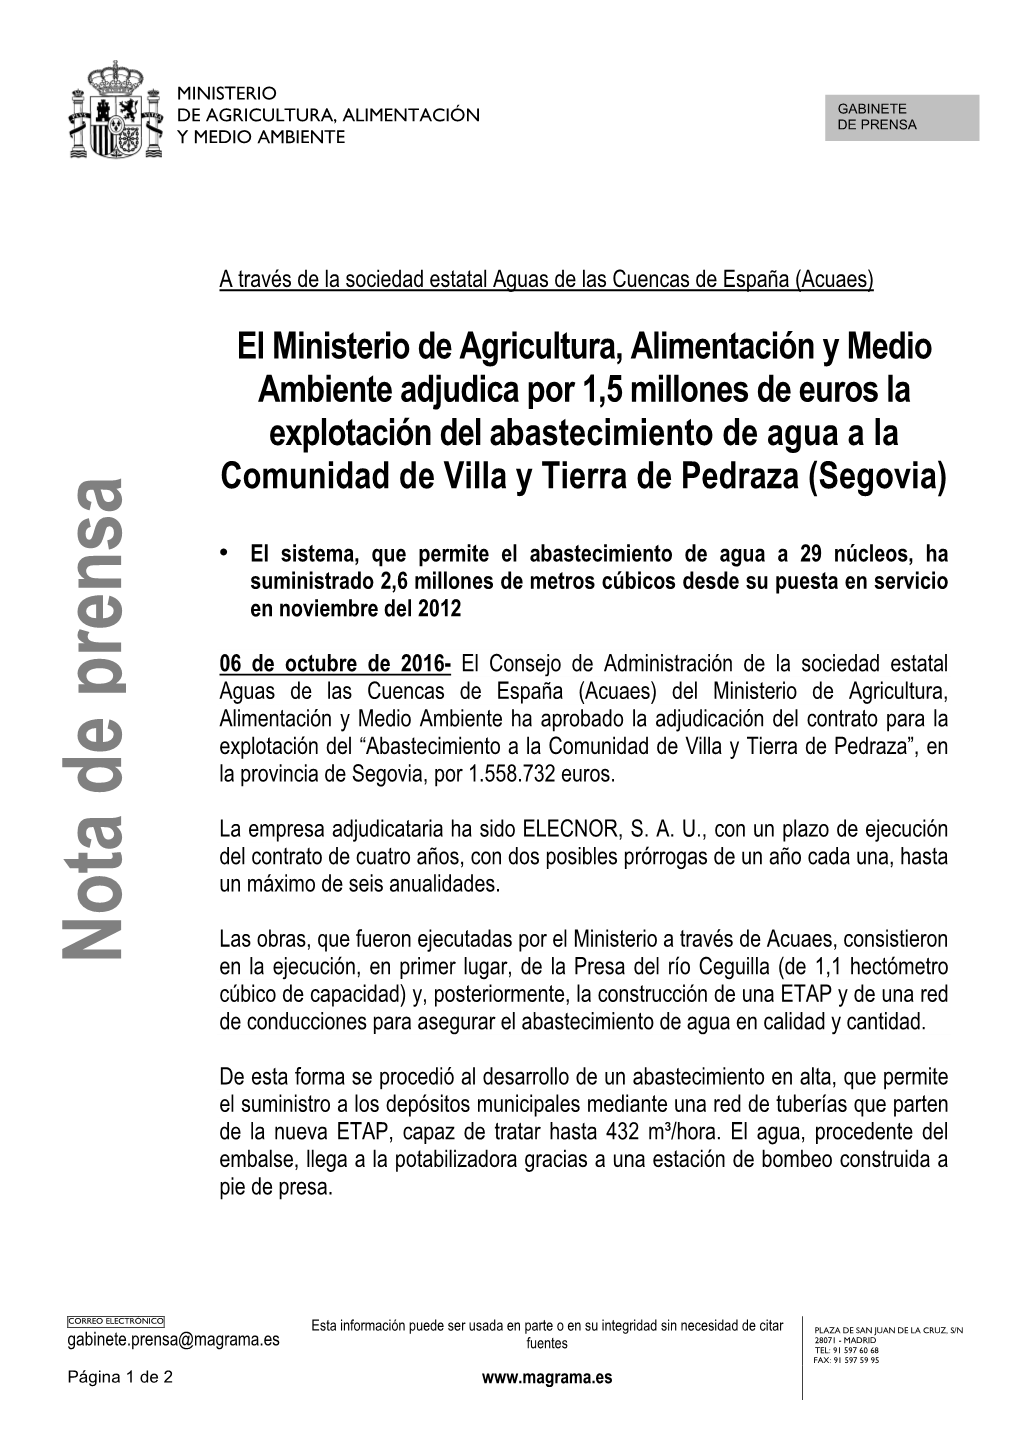 16.10.06 Adjudicación Explotación Abastecimiento Pedraza, Segovia